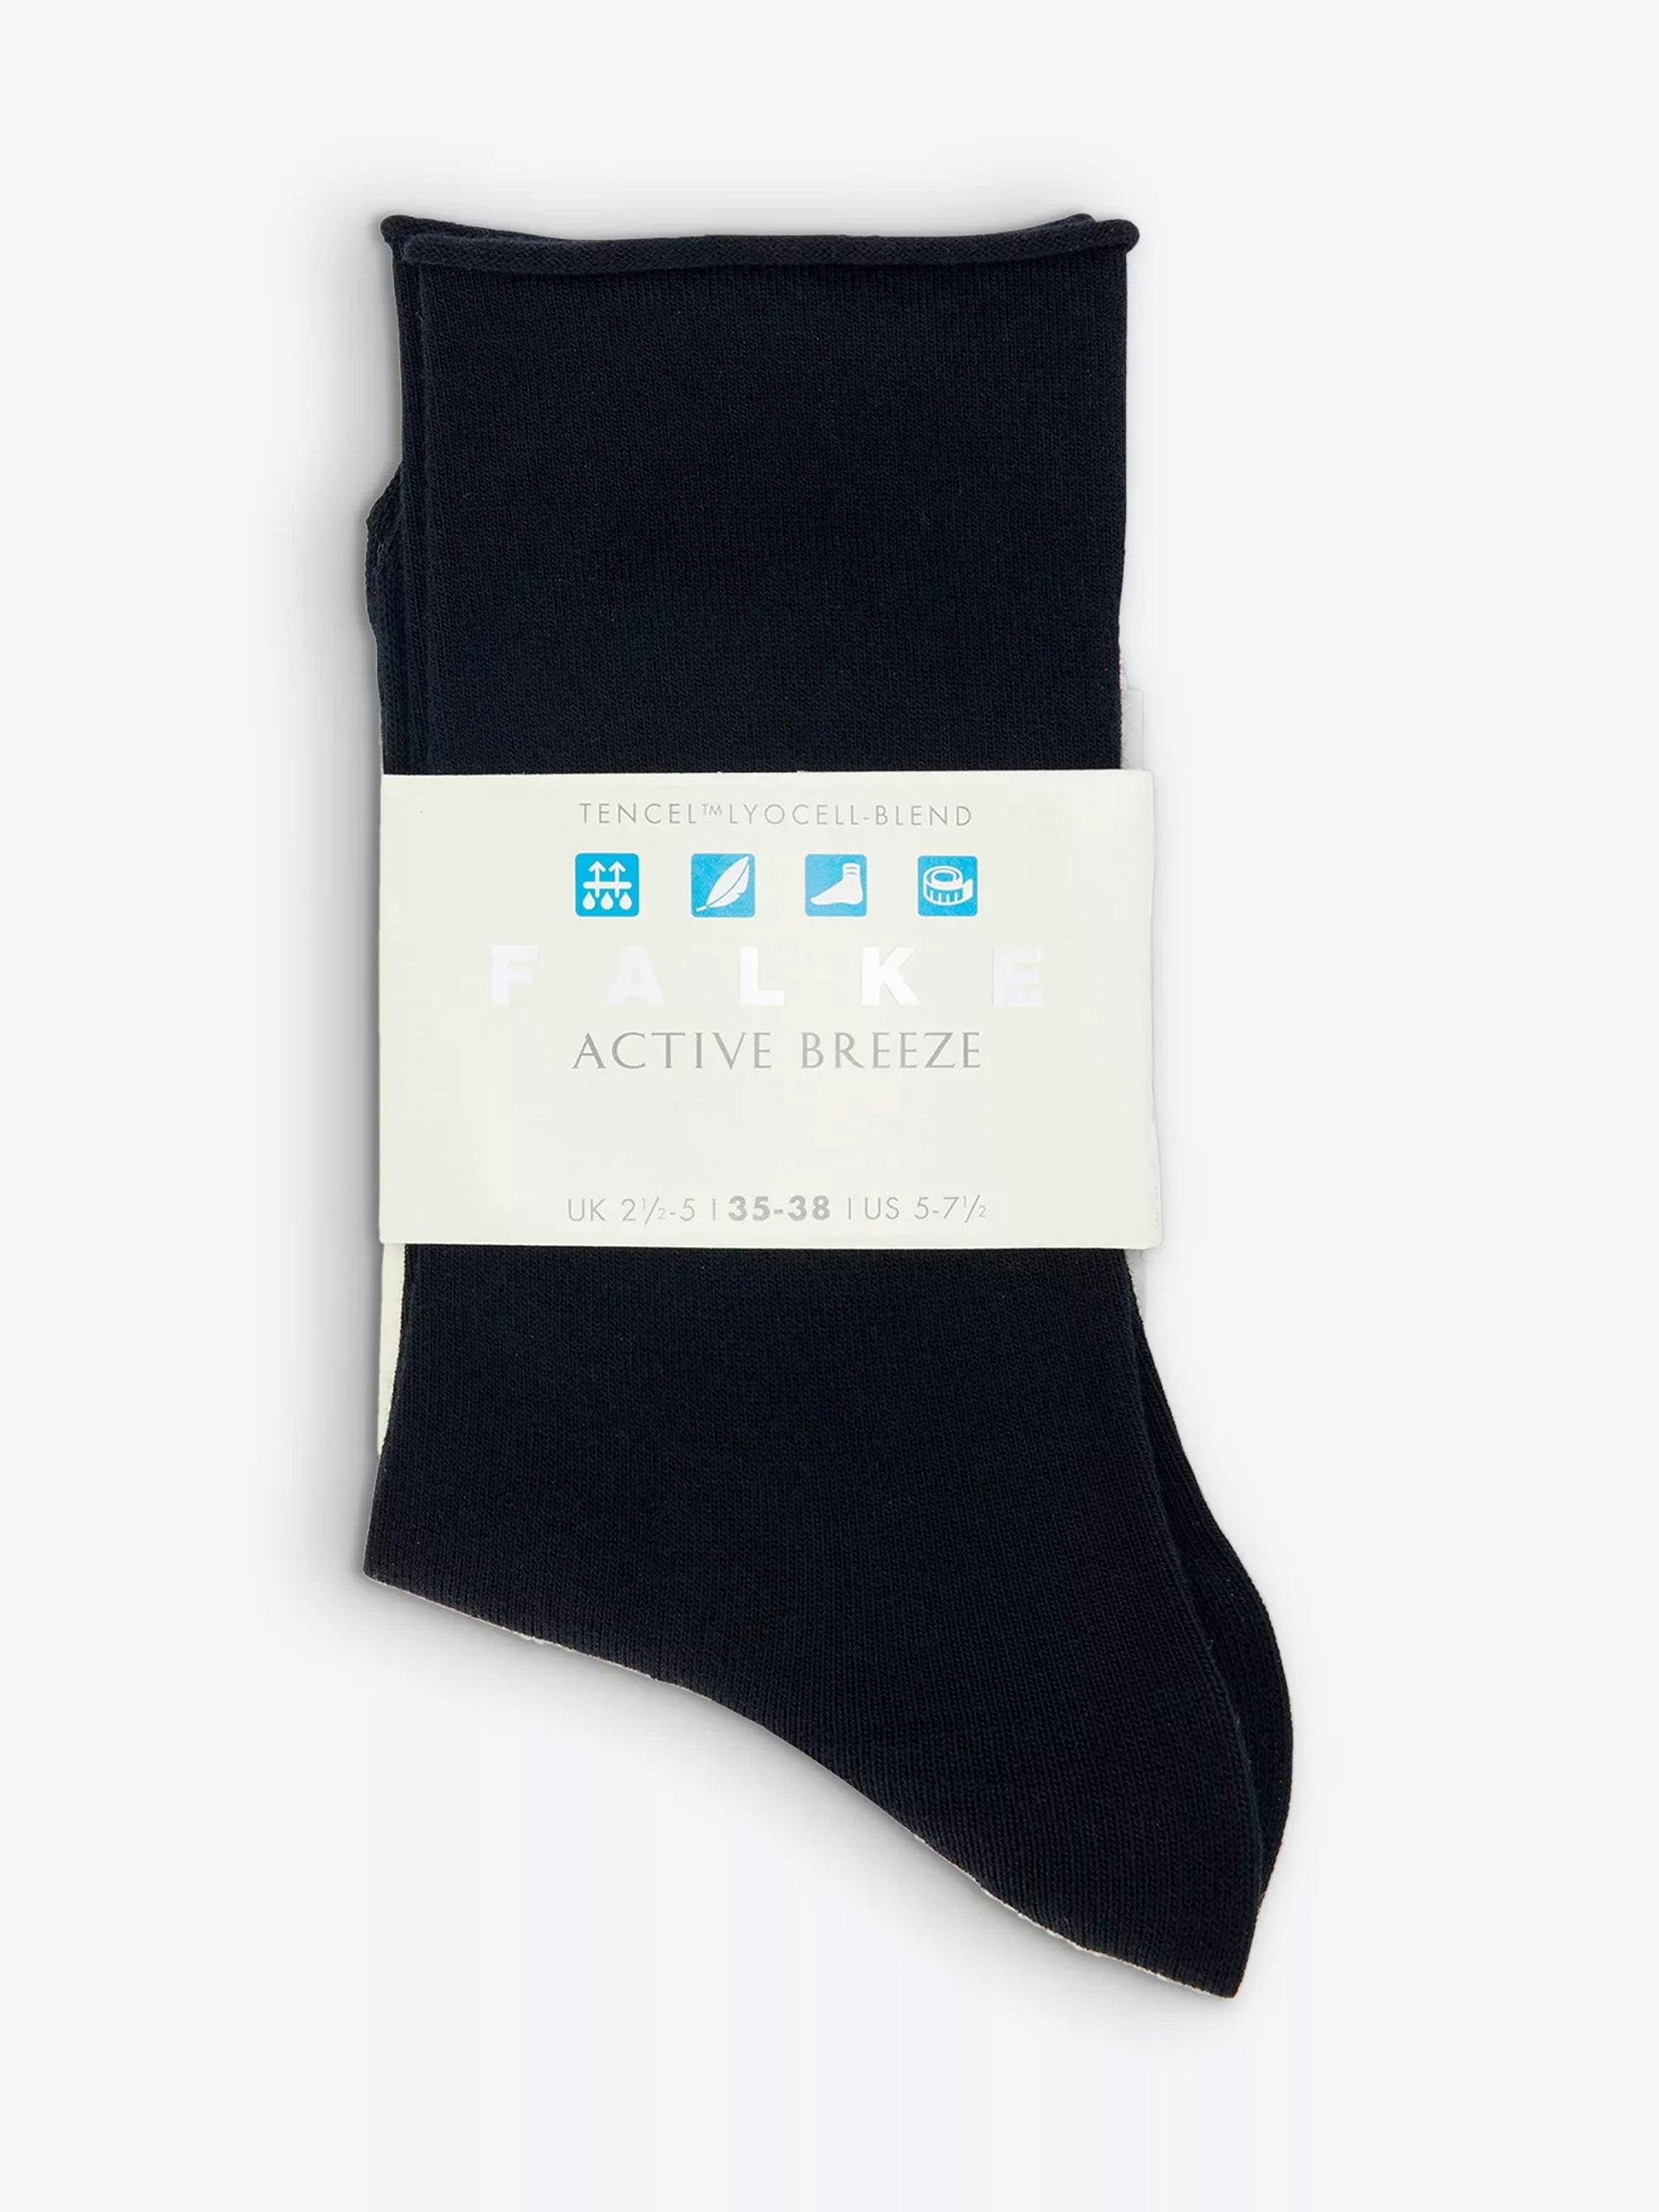 Active Breeze lyocell-blend socks